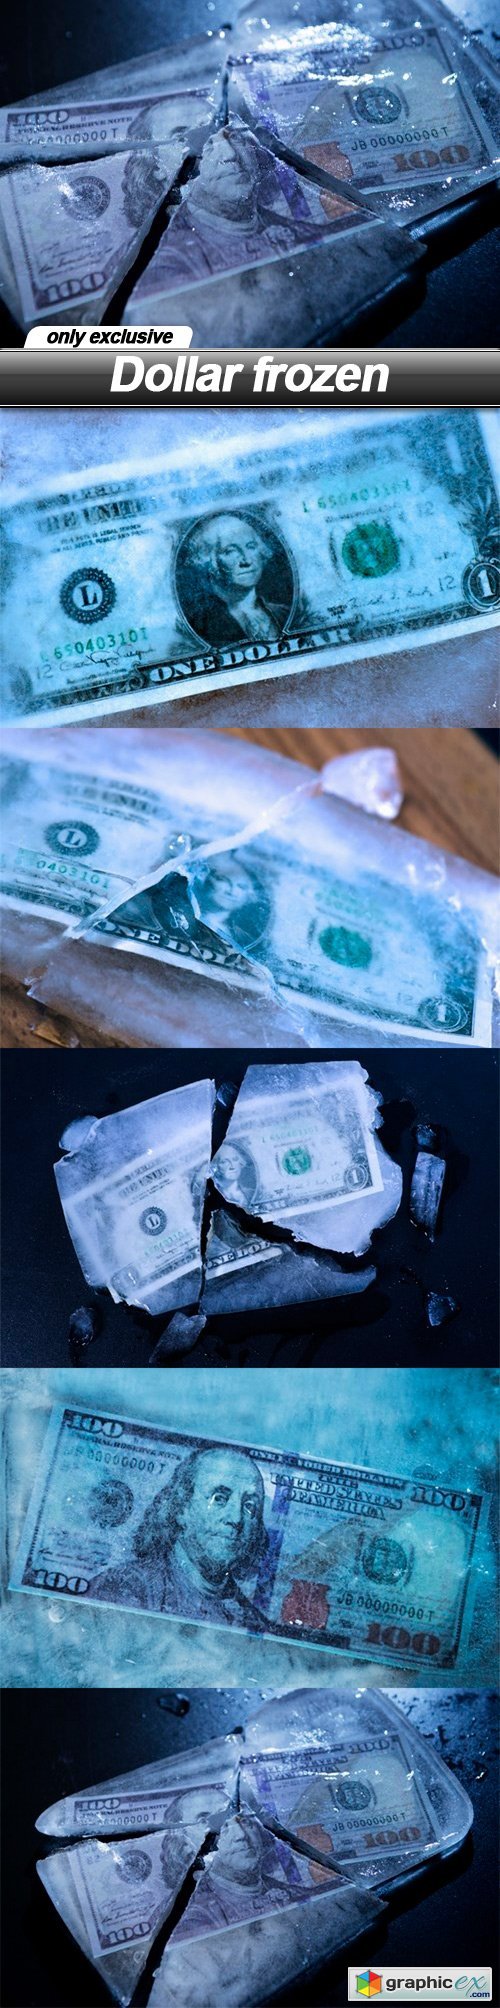 Dollar frozen - 6 UHQ JPEG